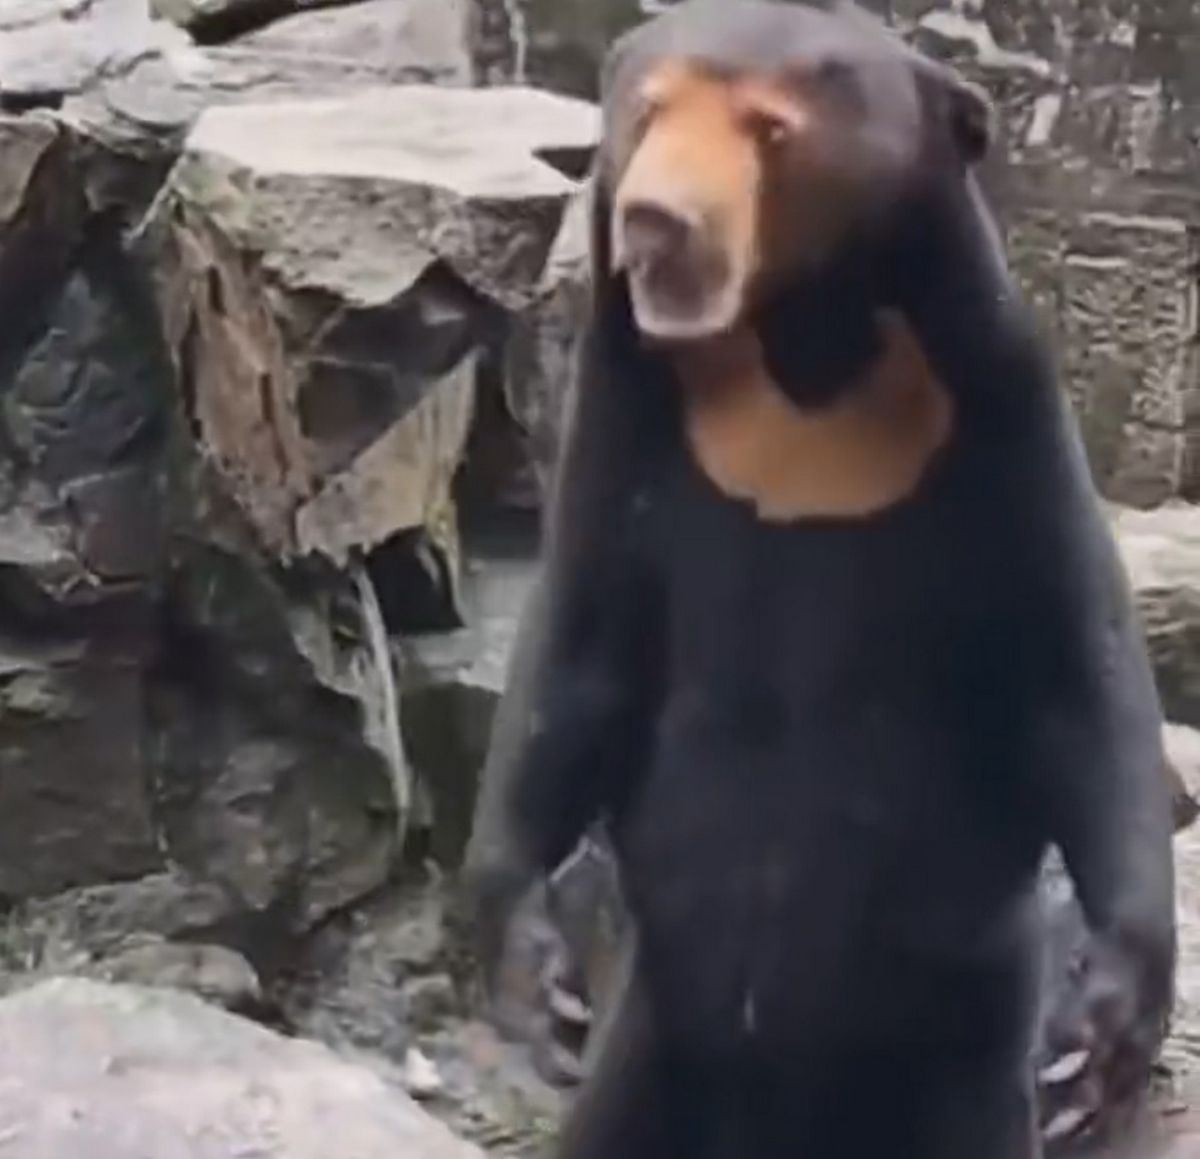 Le zoo de Hangzhou a réfuté toute affirmation suggérant que son ours était en fait un humain portant un costume.